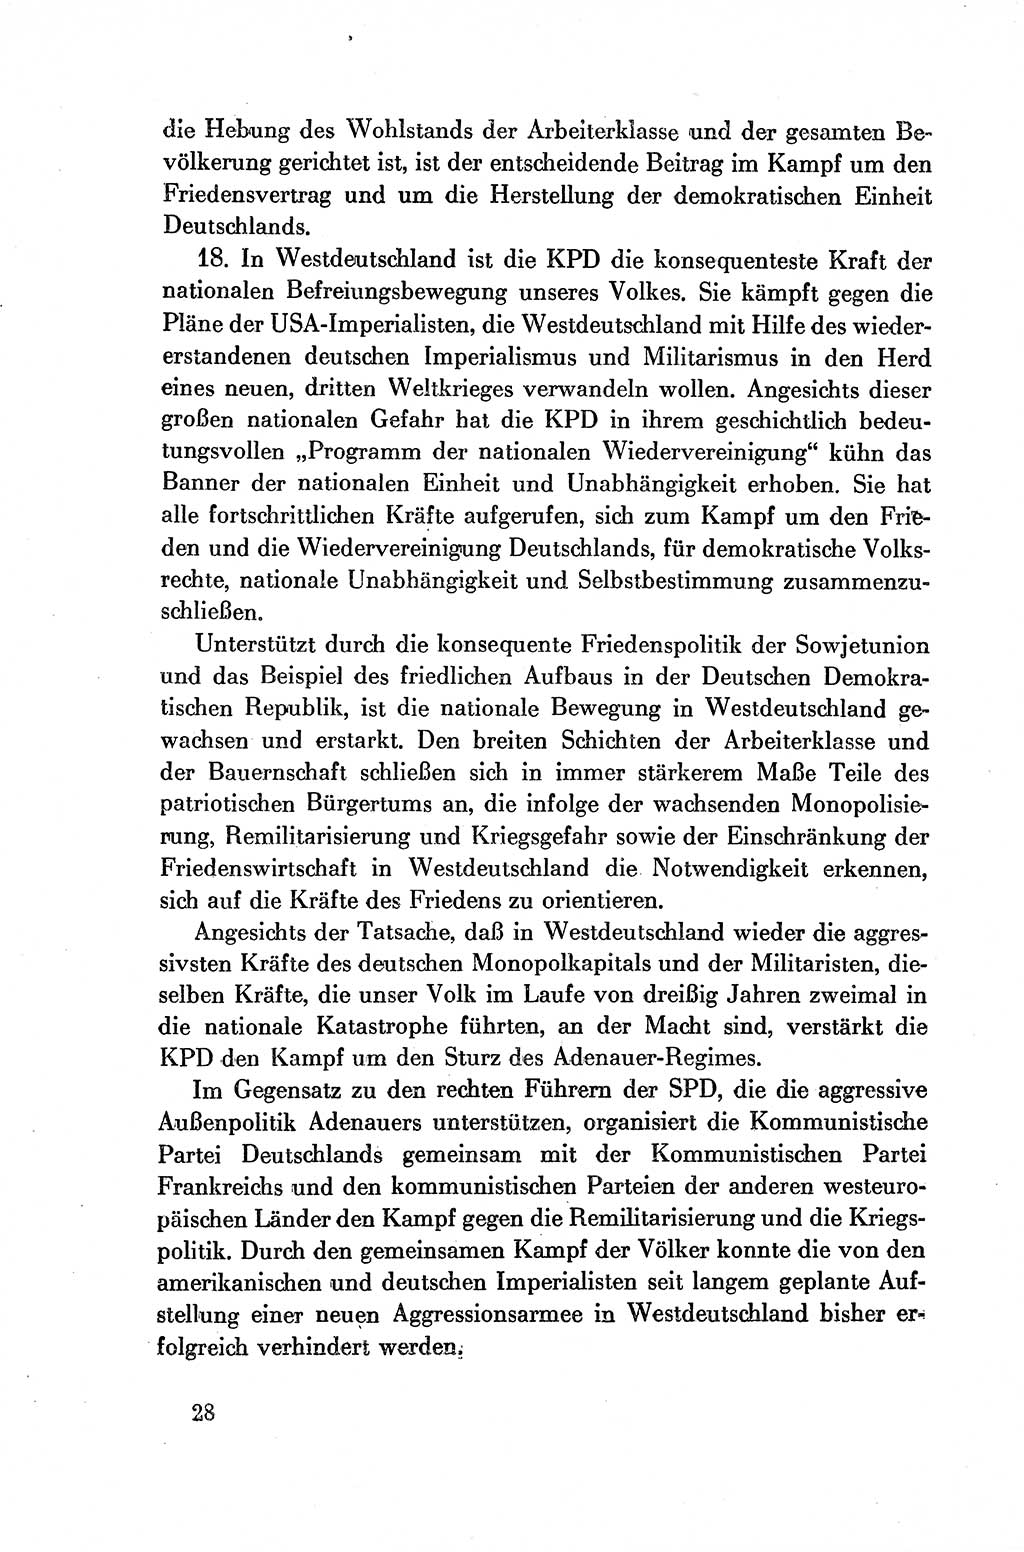 Dokumente der Sozialistischen Einheitspartei Deutschlands (SED) [Deutsche Demokratische Republik (DDR)] 1954-1955, Seite 28 (Dok. SED DDR 1954-1955, S. 28)